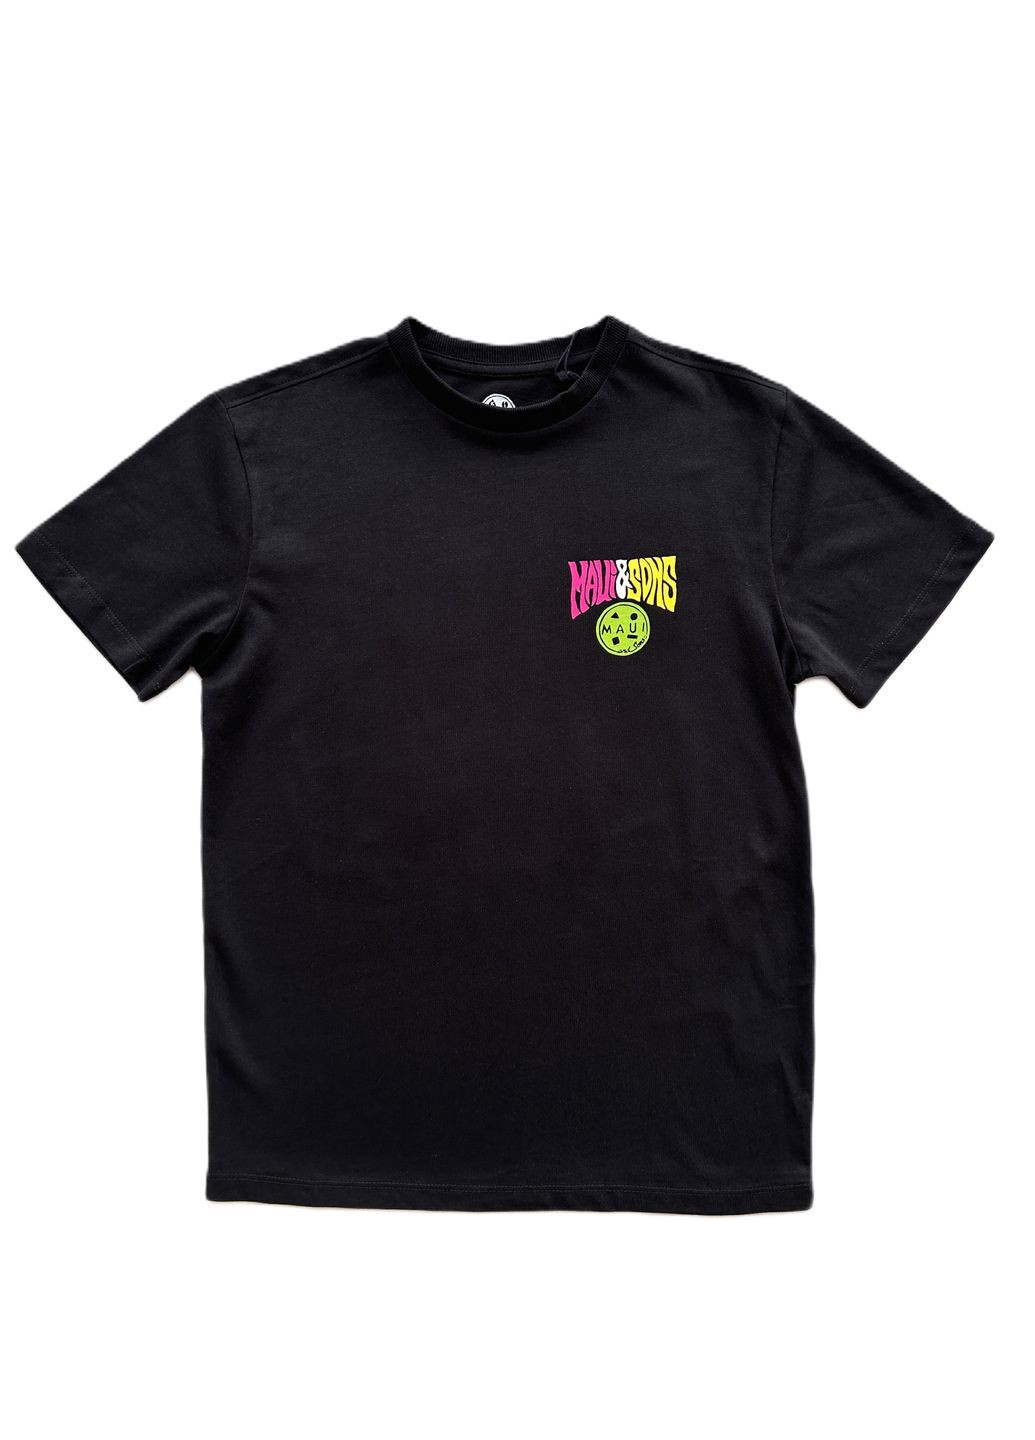 Черная летняя футболка для парня /maui&sons черная с рисунком на спине 2000-66 (152 см) OVS